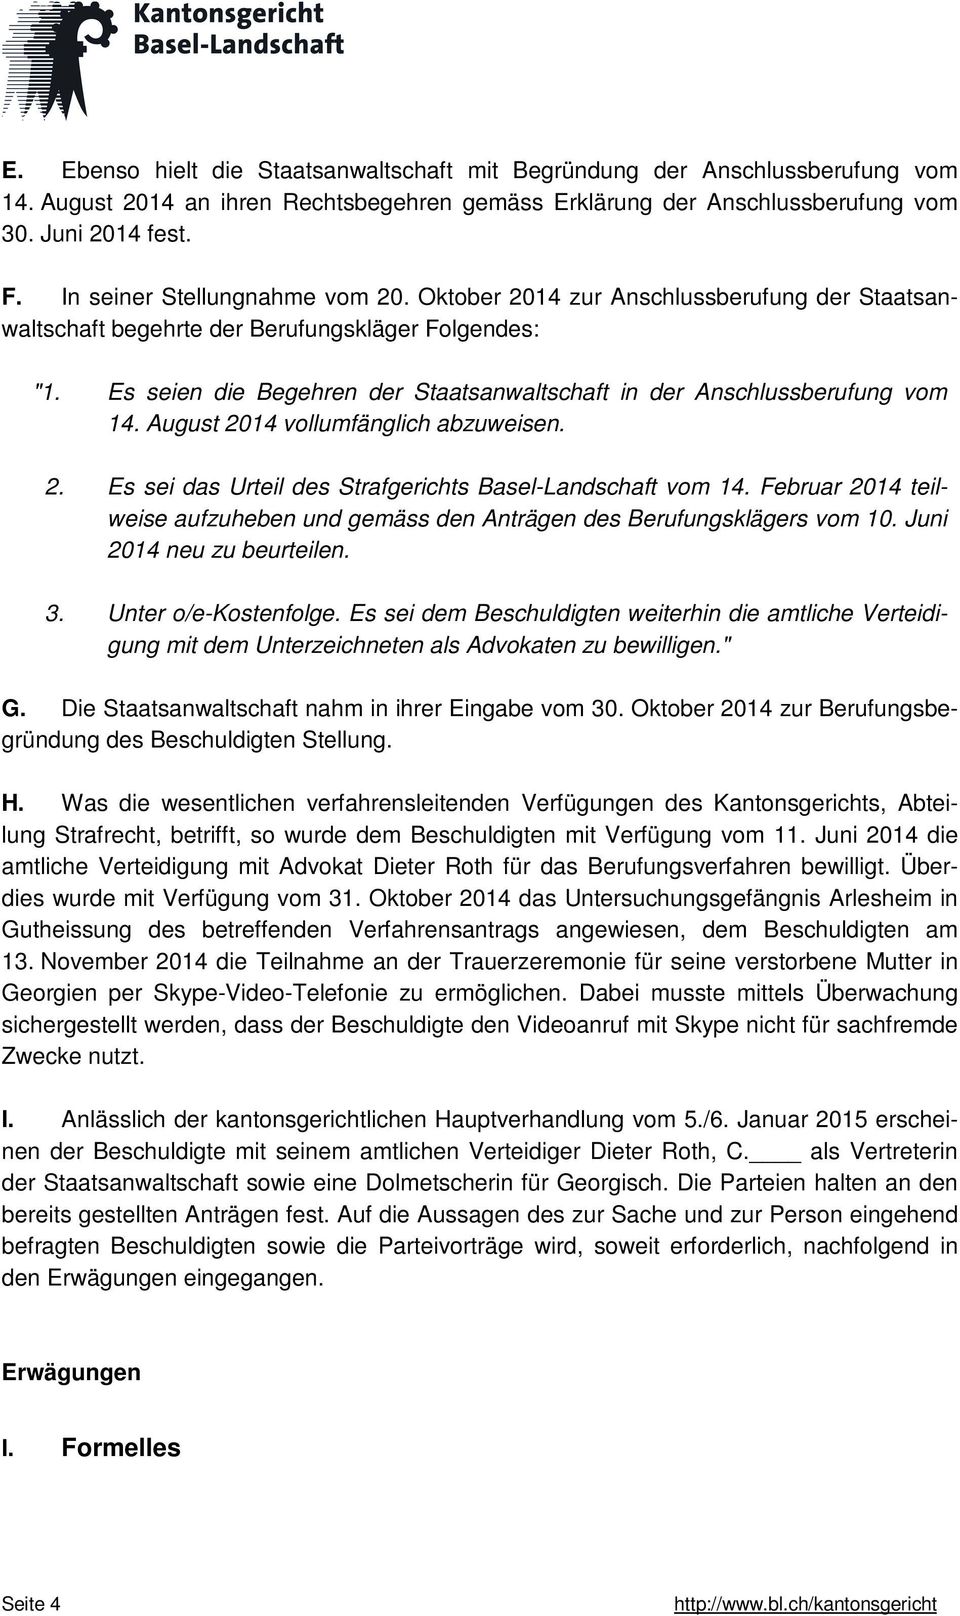 Es seien die Begehren der Staatsanwaltschaft in der Anschlussberufung vom 14. August 2014 vollumfänglich abzuweisen. 2. Es sei das Urteil des Strafgerichts Basel-Landschaft vom 14.